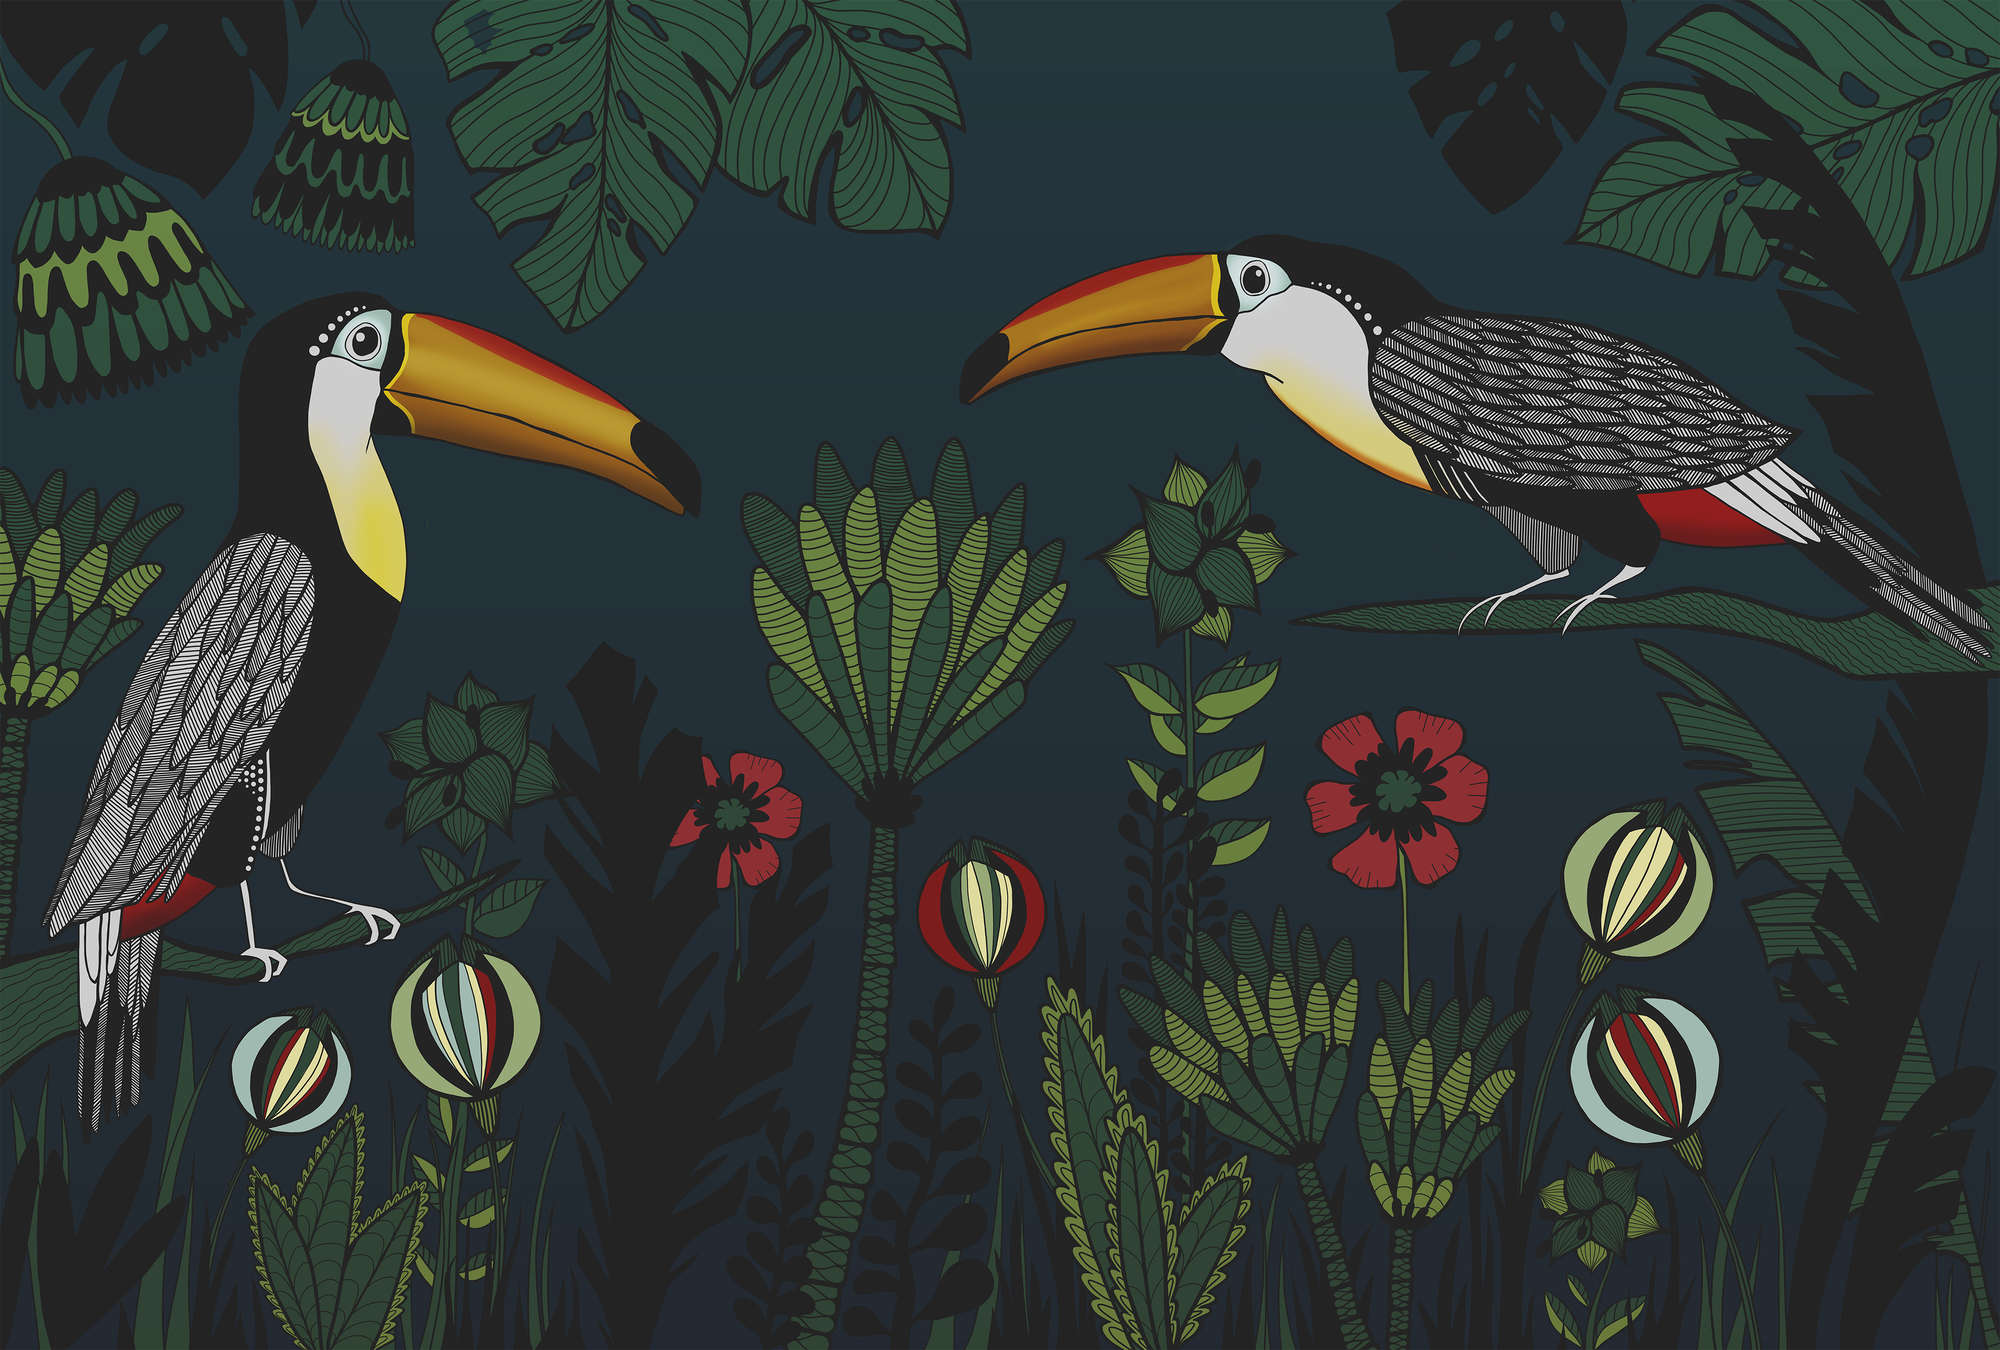             Papier peint motif jungle avec des oiseaux en style de dessin
        